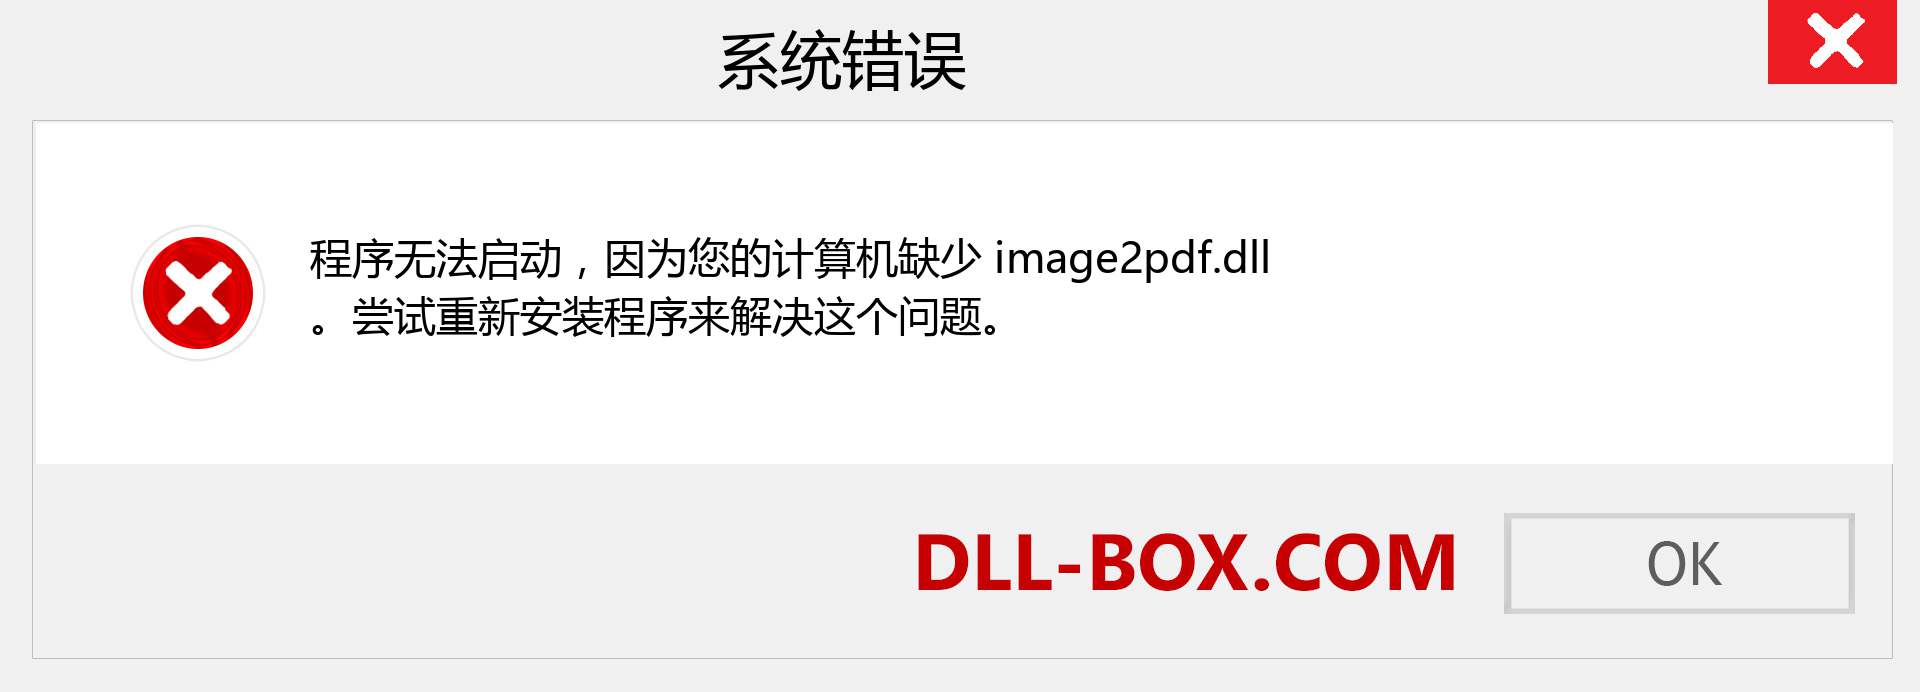 image2pdf.dll 文件丢失？。 适用于 Windows 7、8、10 的下载 - 修复 Windows、照片、图像上的 image2pdf dll 丢失错误